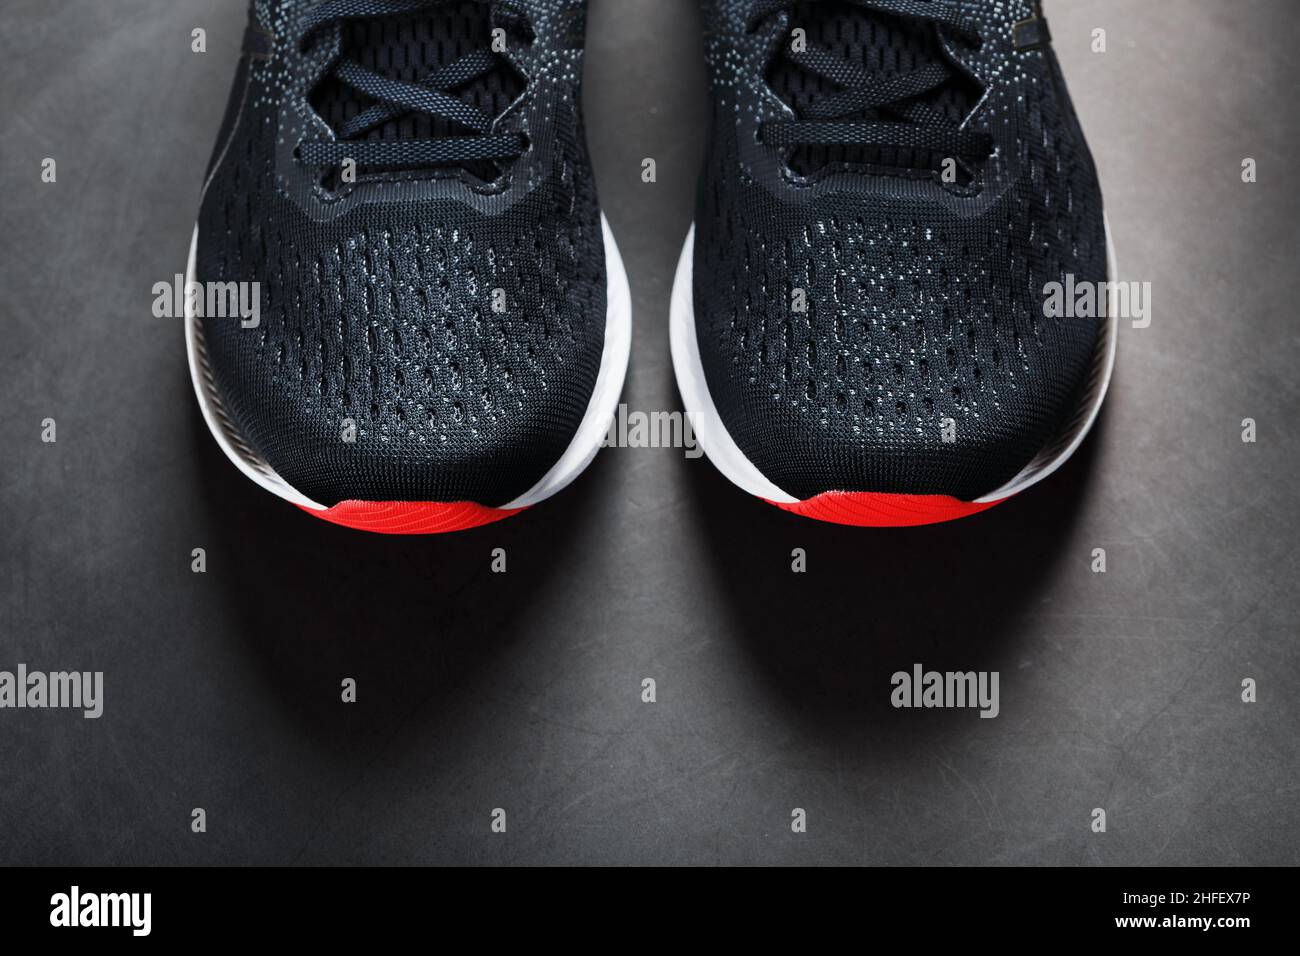 Zapatillas deportivas negras suela roja sobre fondo negro. Espacio libre Fotografía de stock -